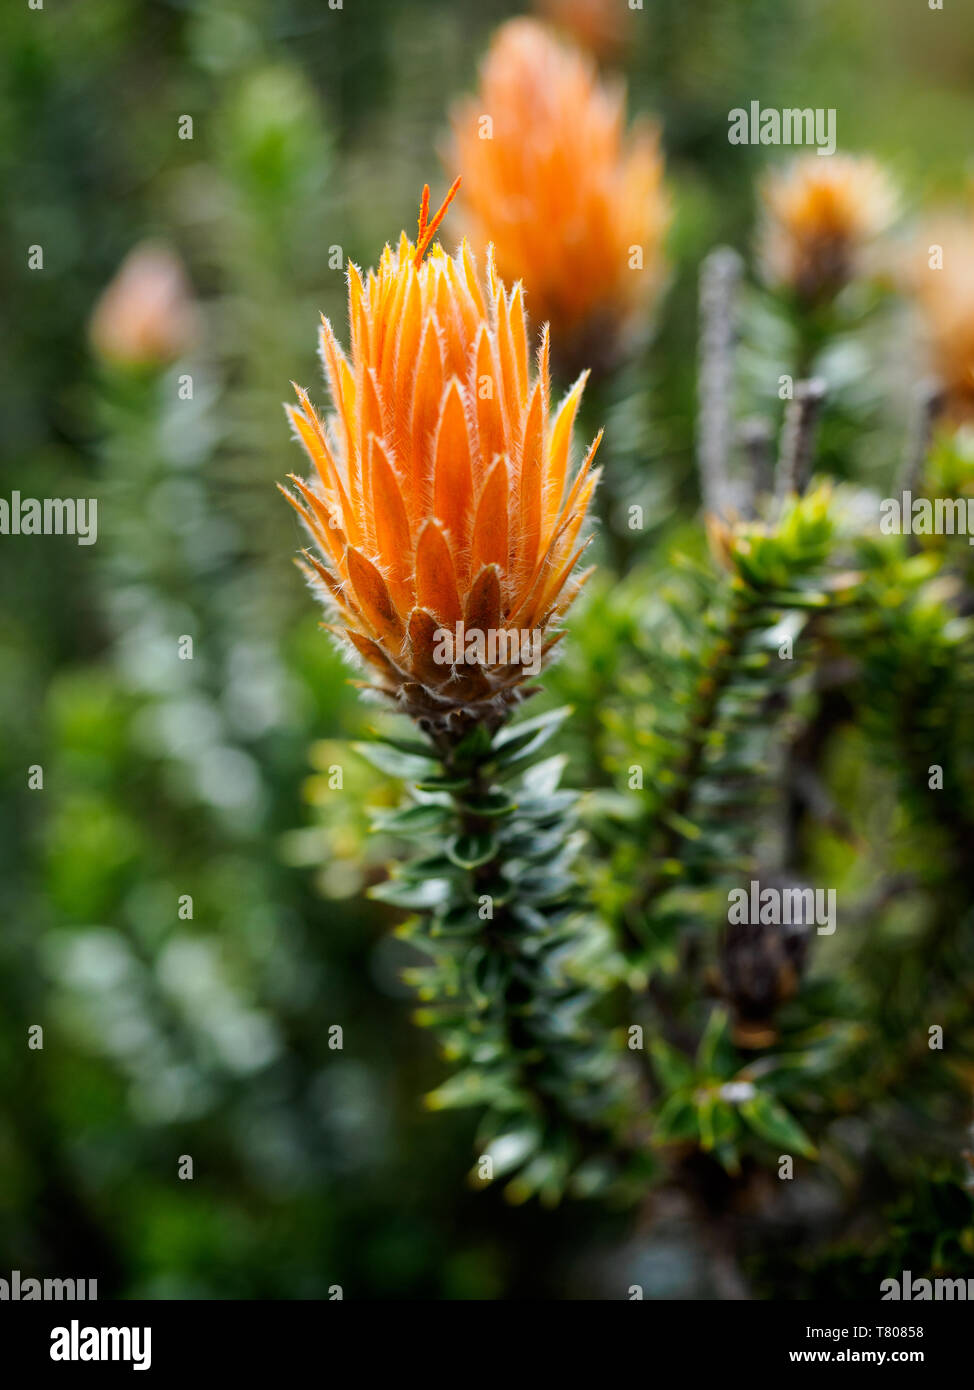 Orange-tipped Chuquiraga plant used medicinally in Ecuador, Cotopaxi National Park, Andes mountains, Ecuador, South America Stock Photo